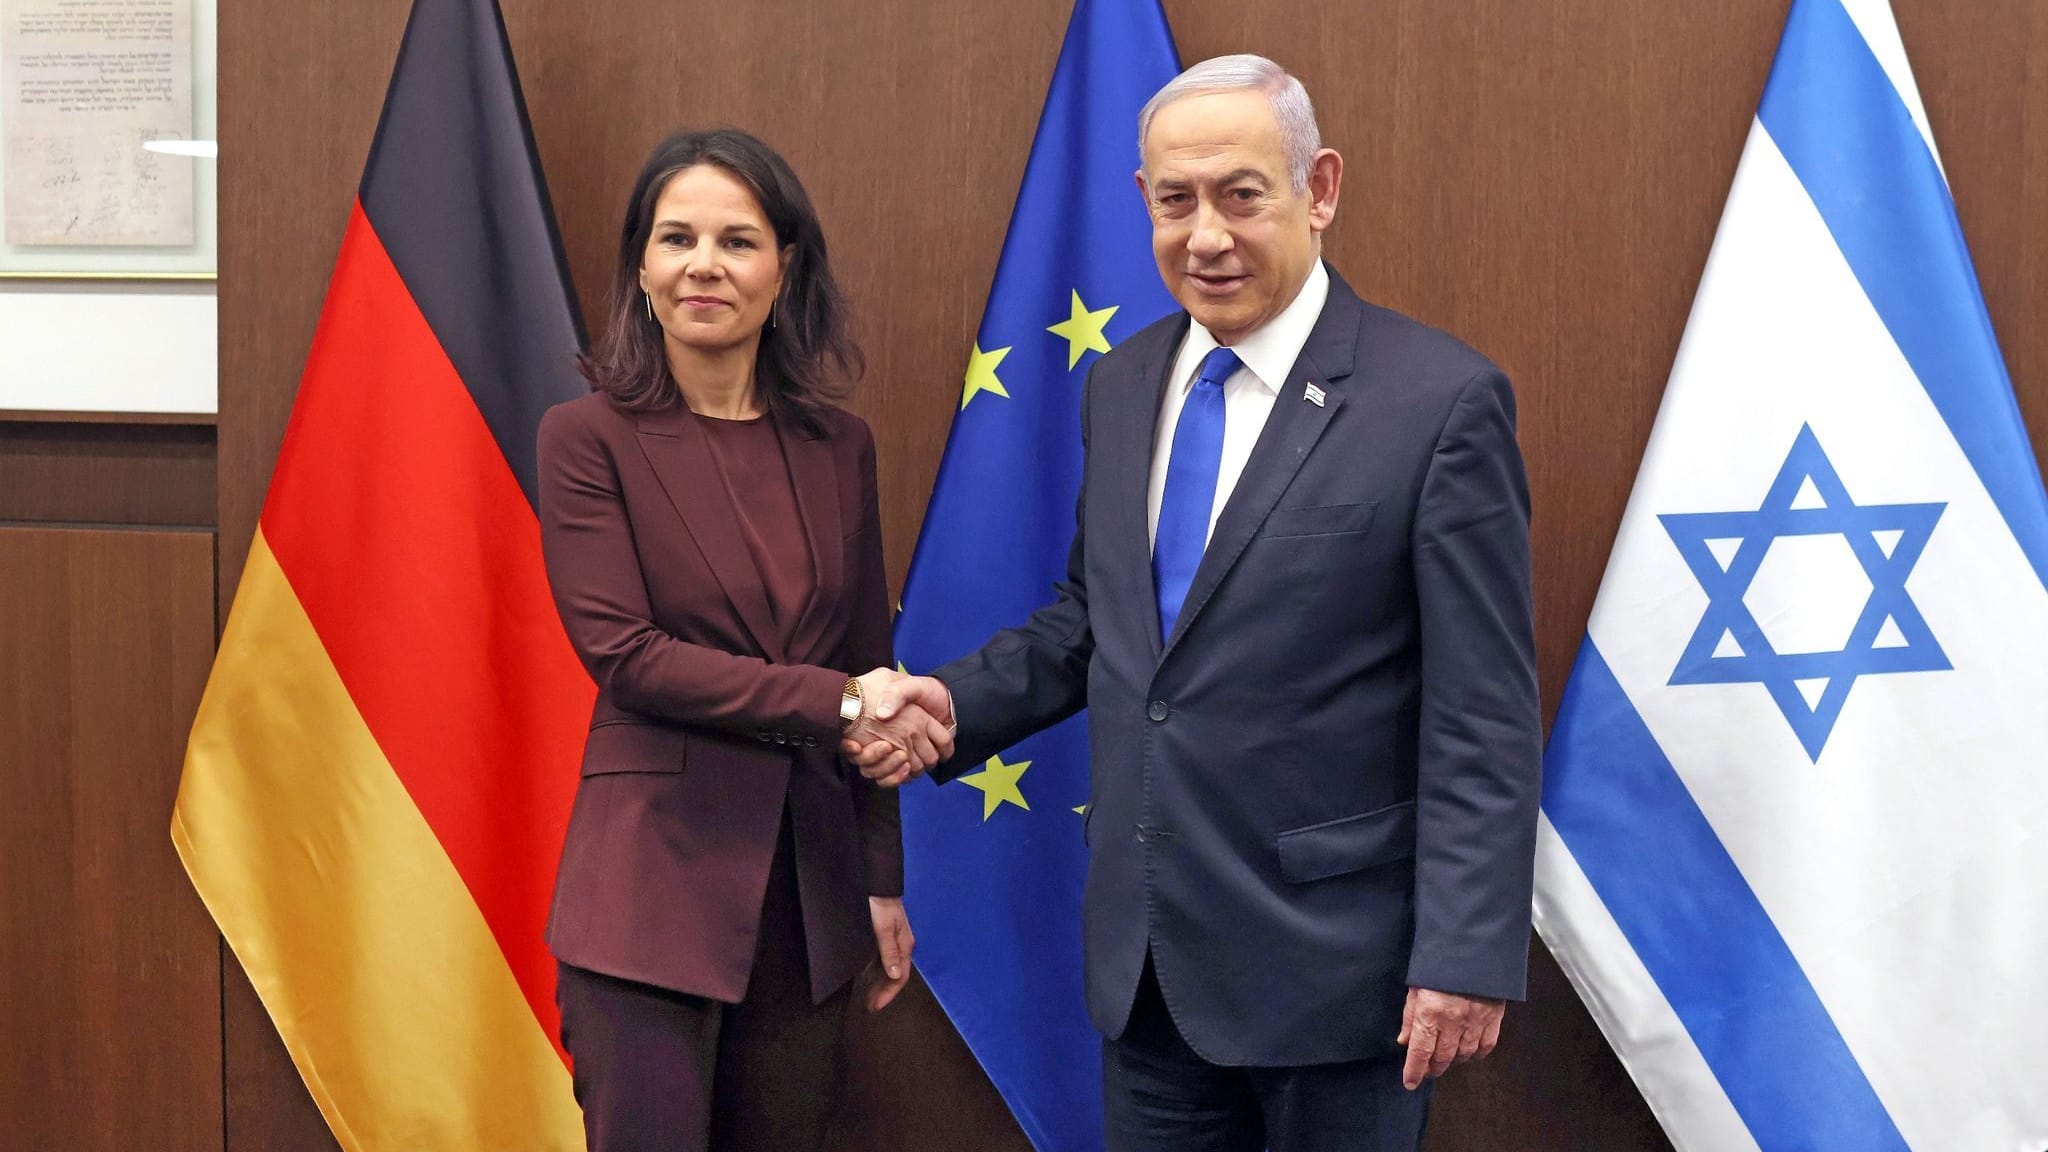 Streit zwischen Baerbock und Netanjahu? – AA widerspricht